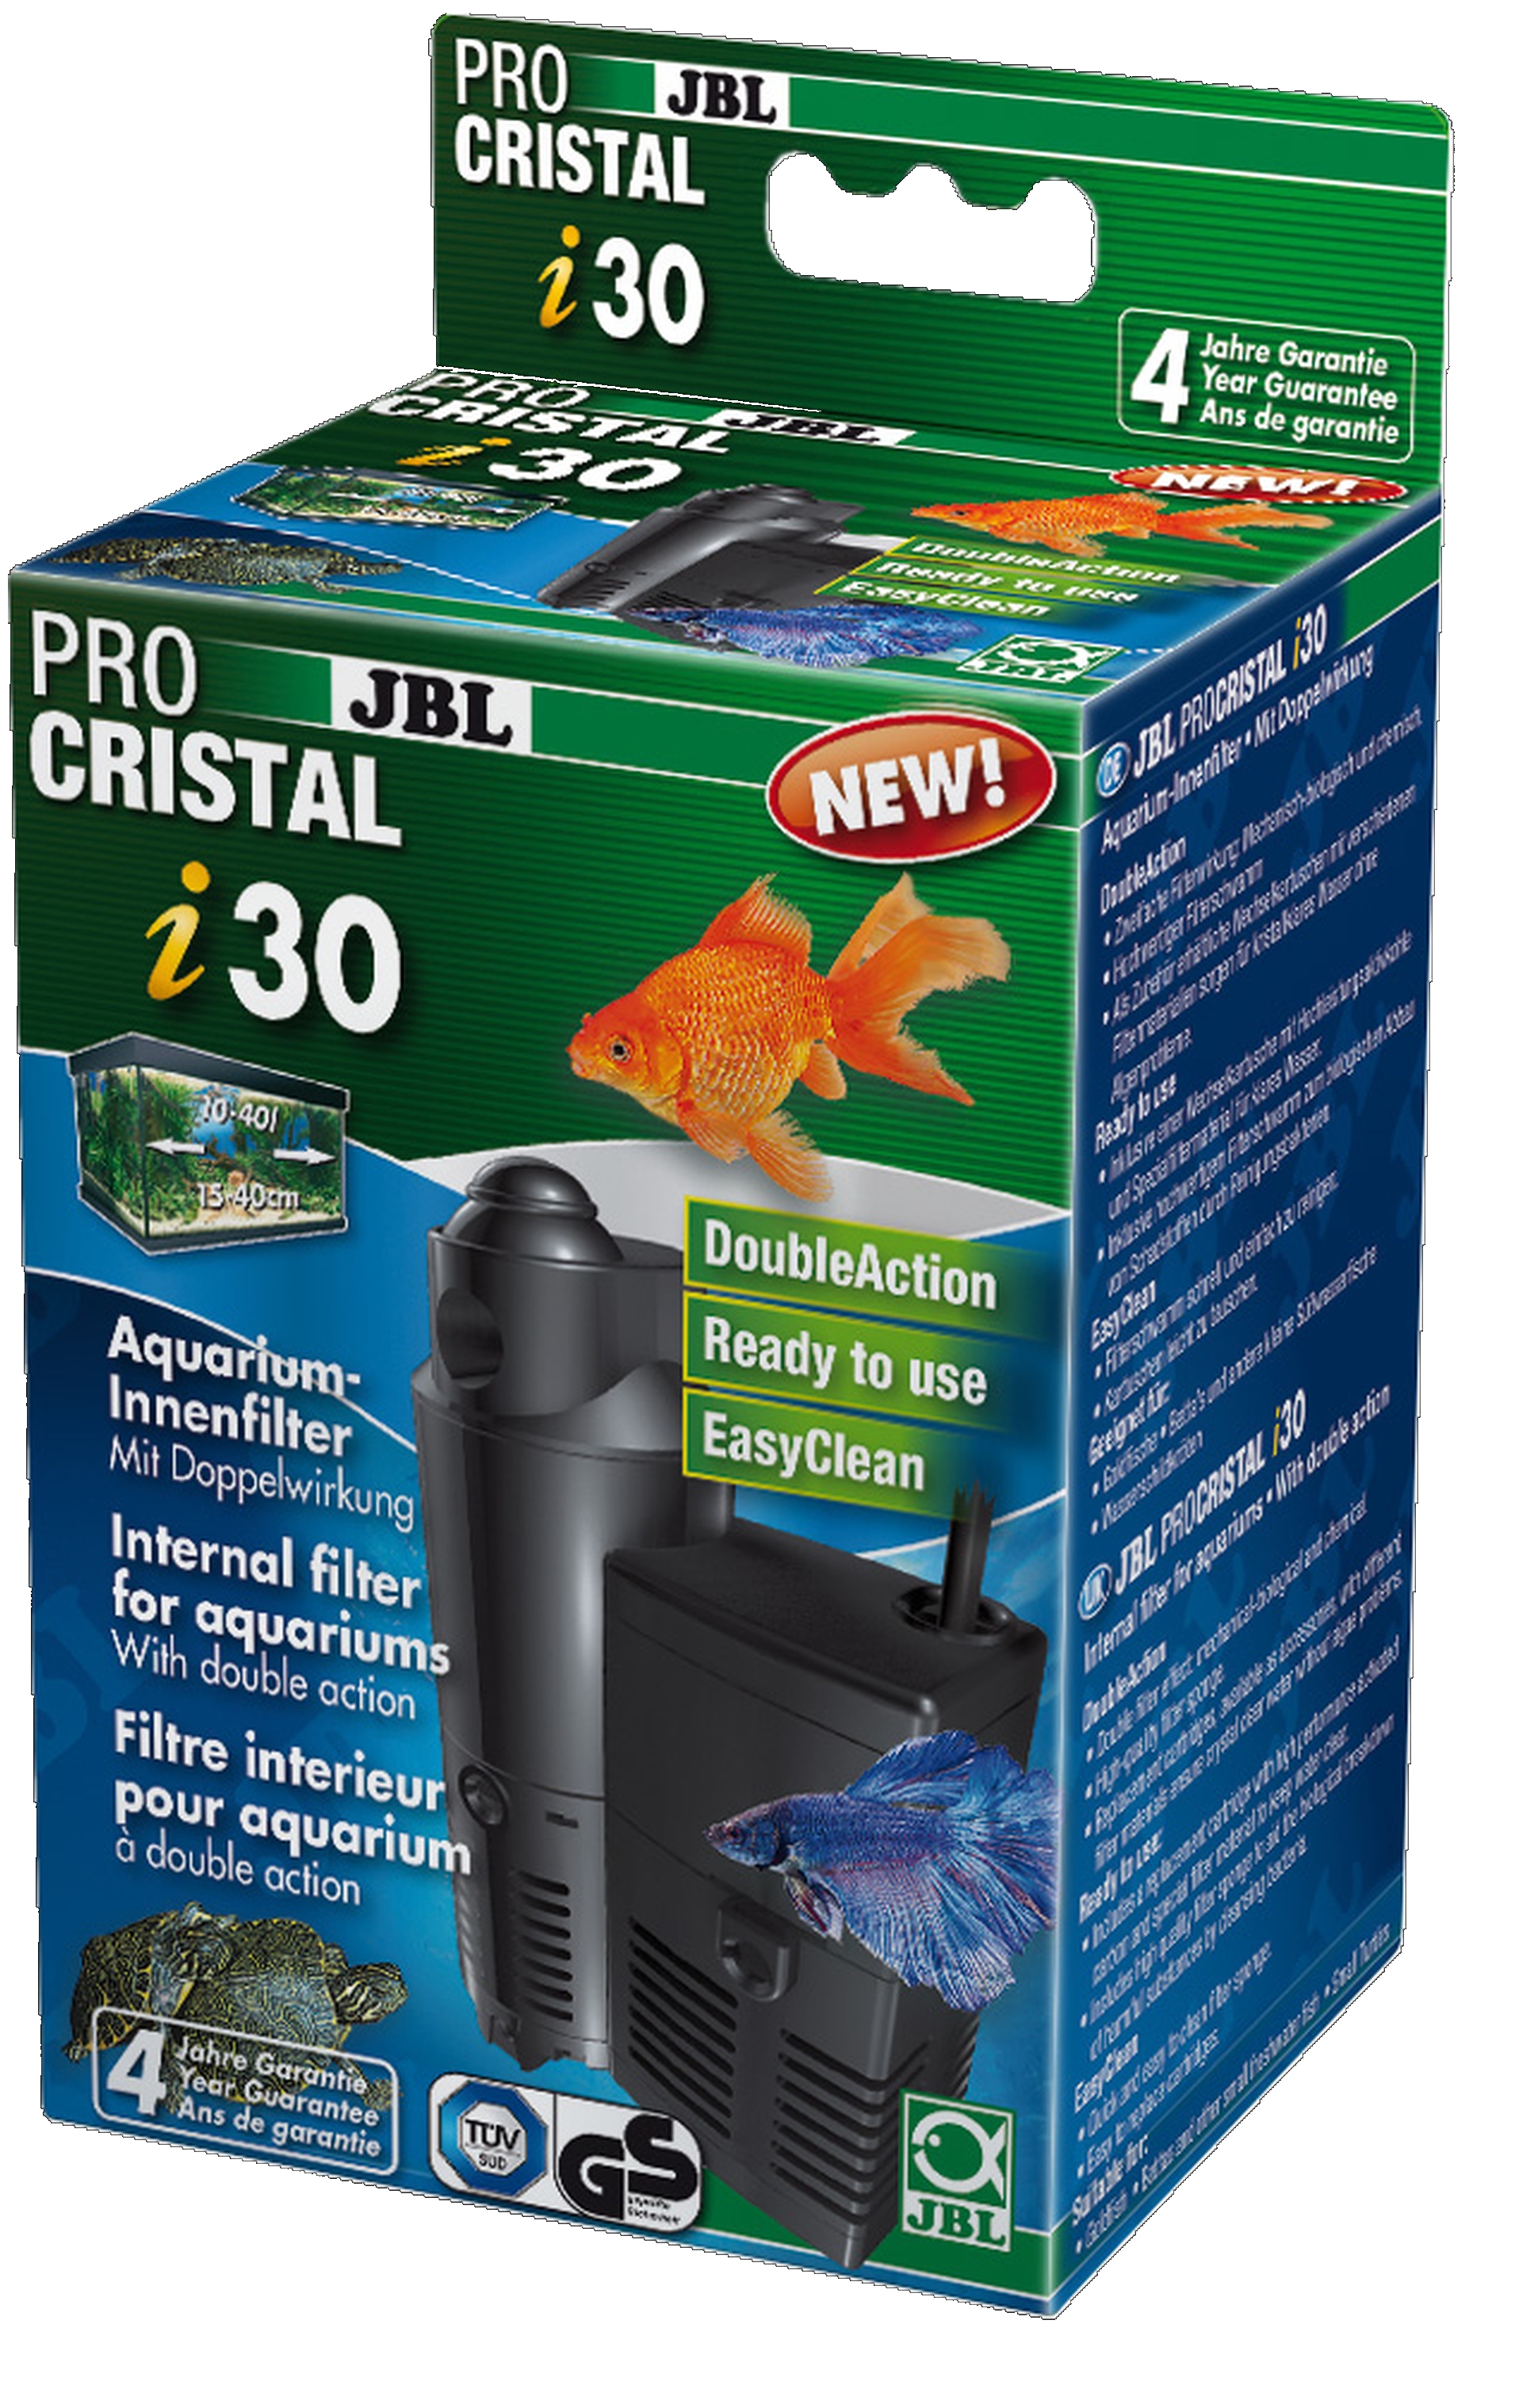 JBL Cristal Pro i30 Innenfilter